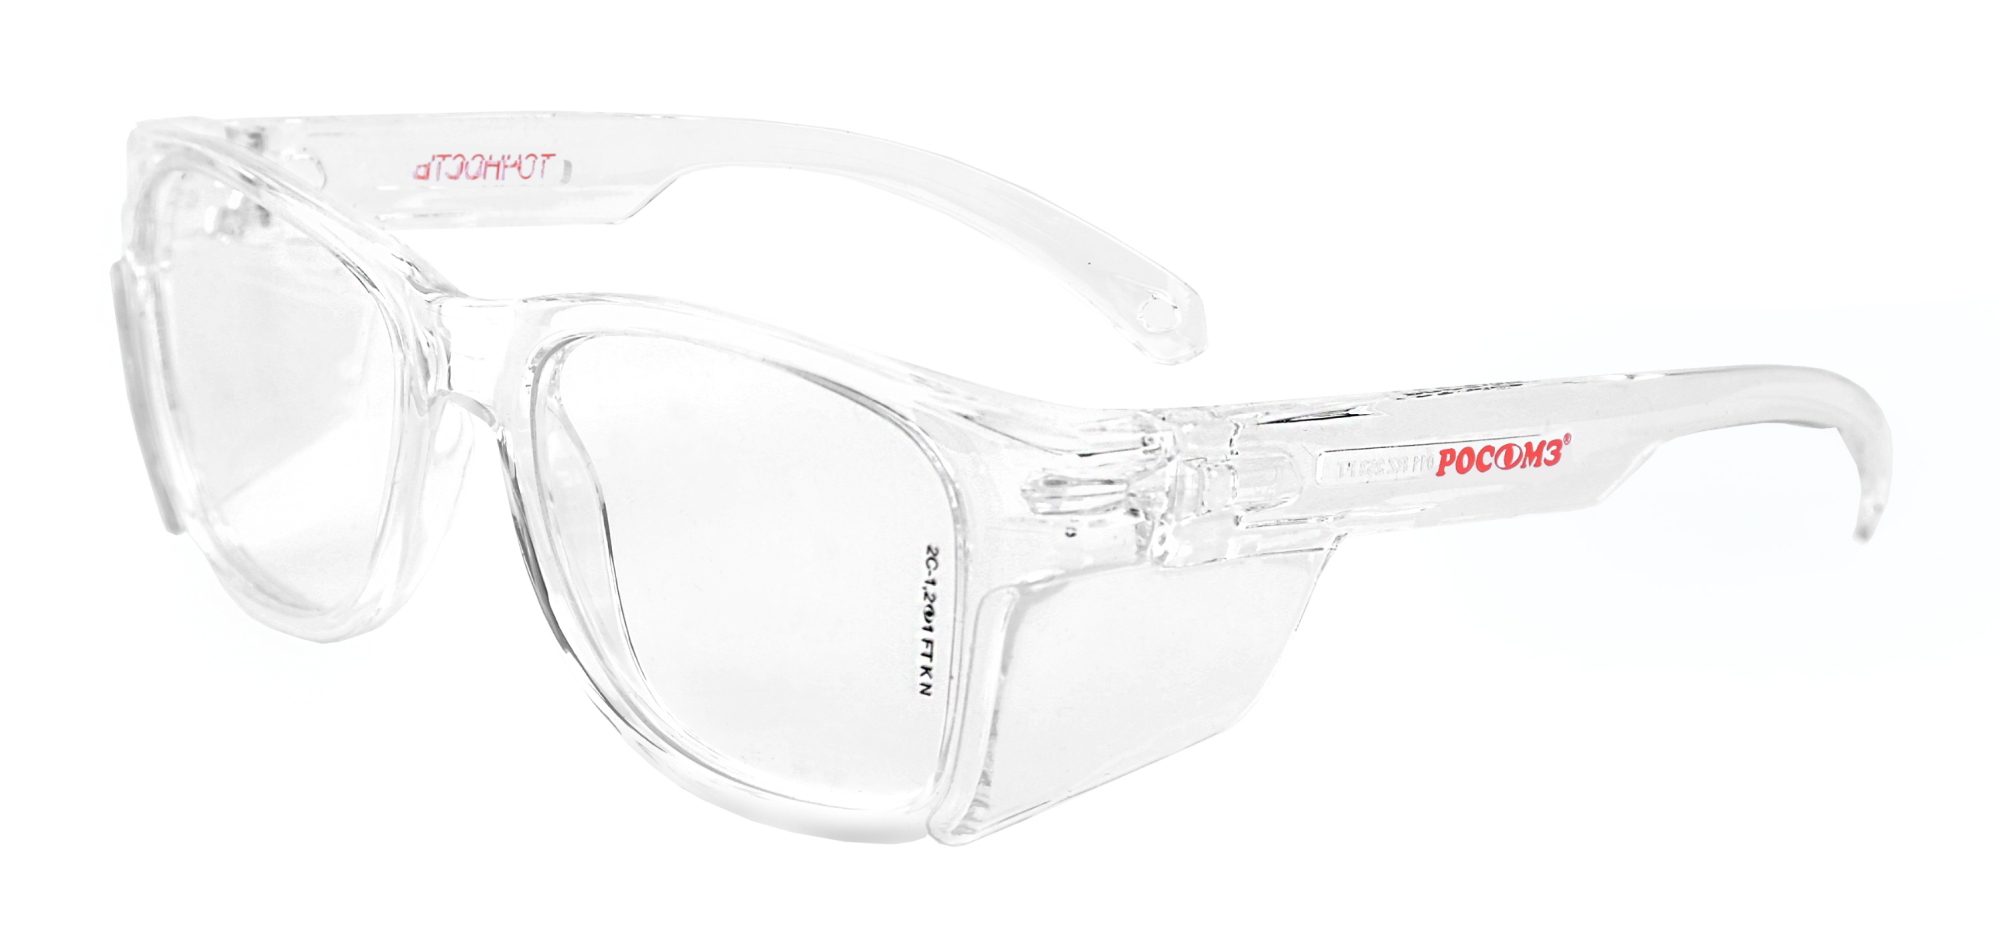 STRONGGLASS BT 9 очки защитные. Очки о50 Monaco STRONGGLASS РОСОМЗ/15037. Очки защитные открытые о87 Arctic (Арктик) STRONGGLASS (18727). Очки СОМЗ-80 Зебра. Очки защитные открытые strongglass